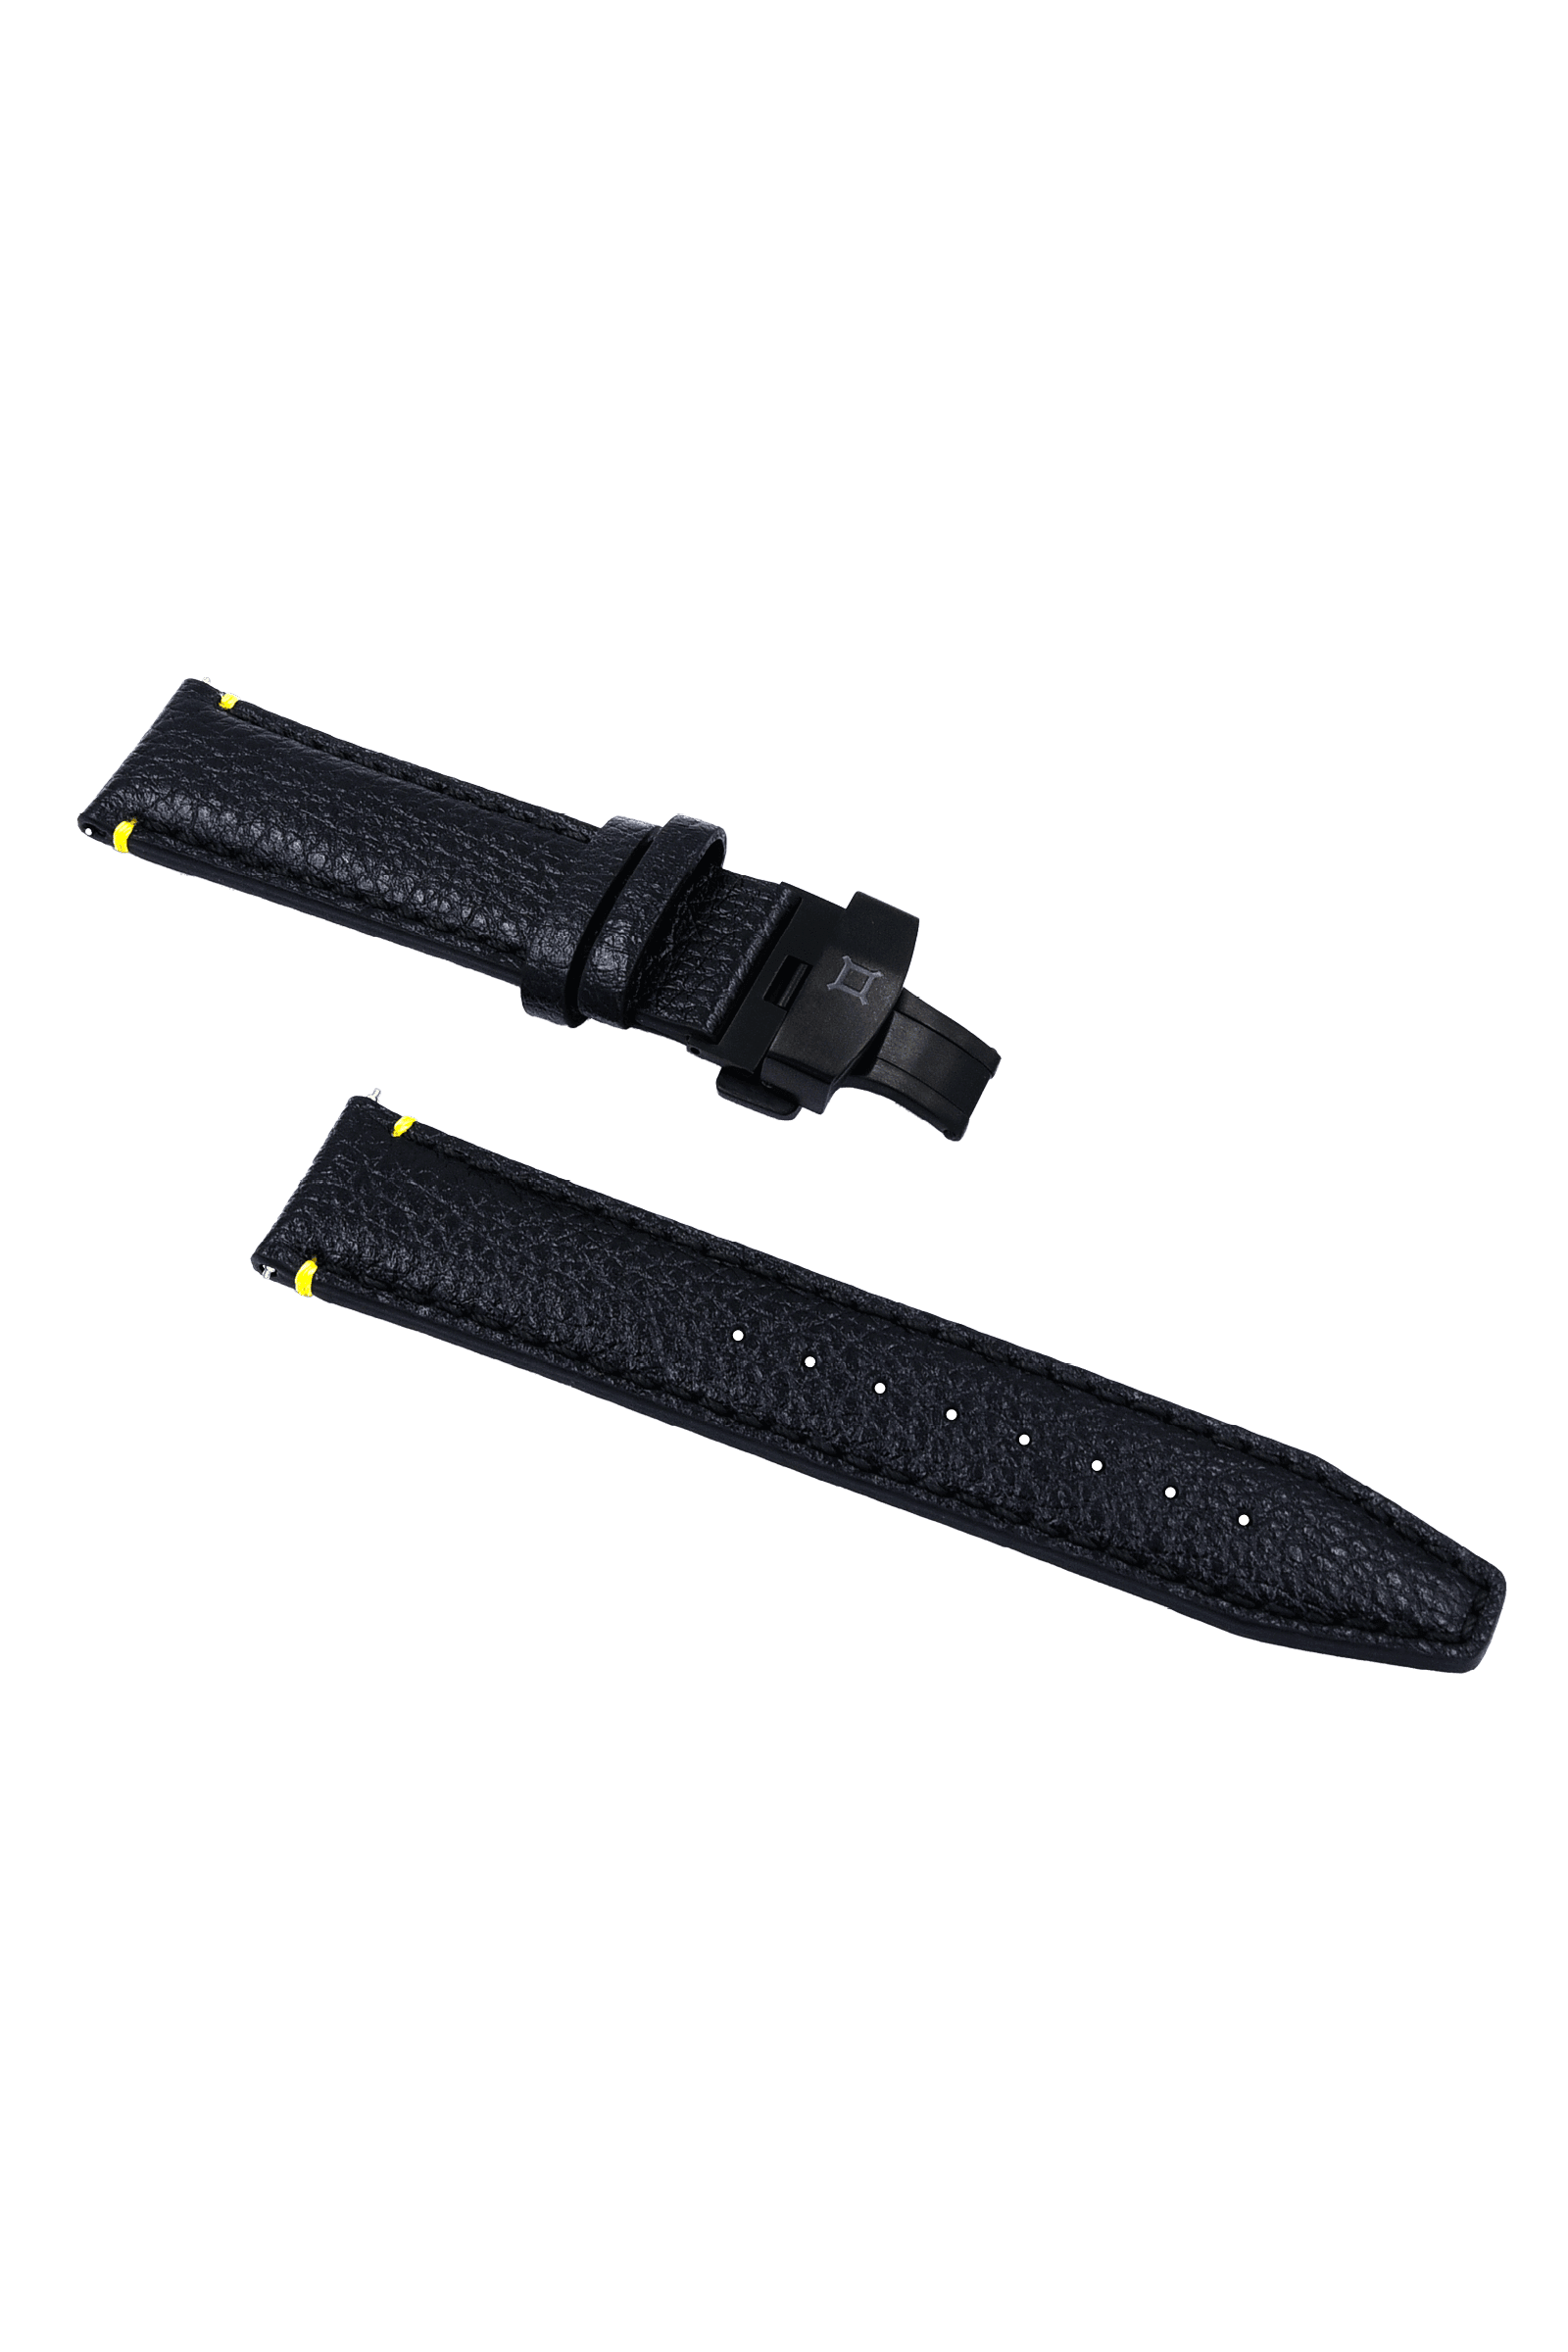 Luxus Tiefenmesser Submarine Steel Watch in den Farben Jet Black, Light Grey und Slate Grey.